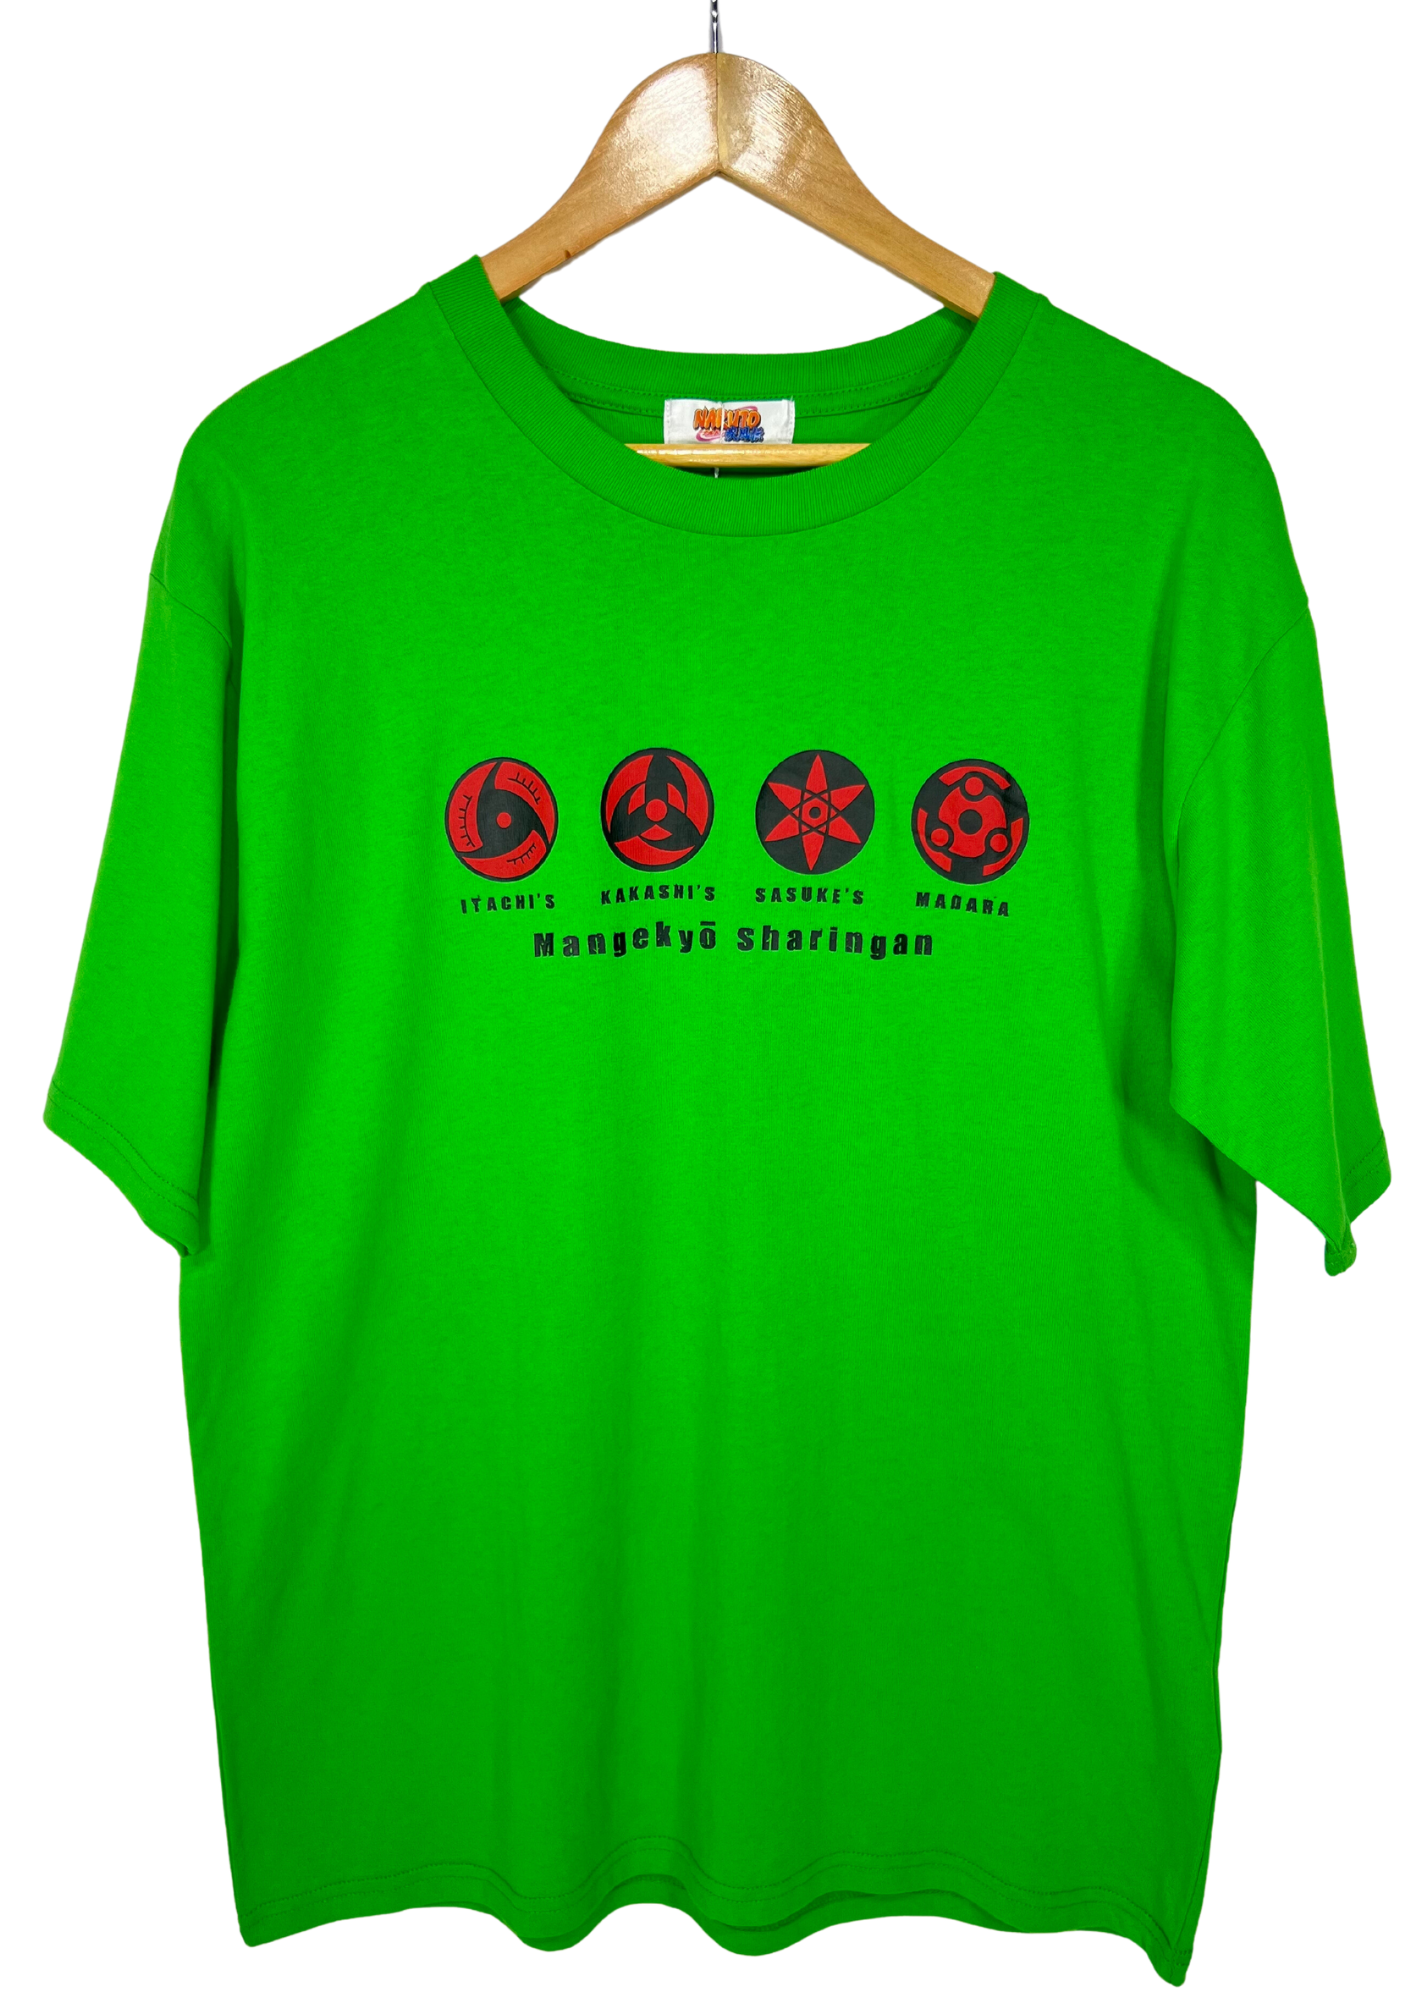 Naruto x Zels Sharingan Logos T-shirt